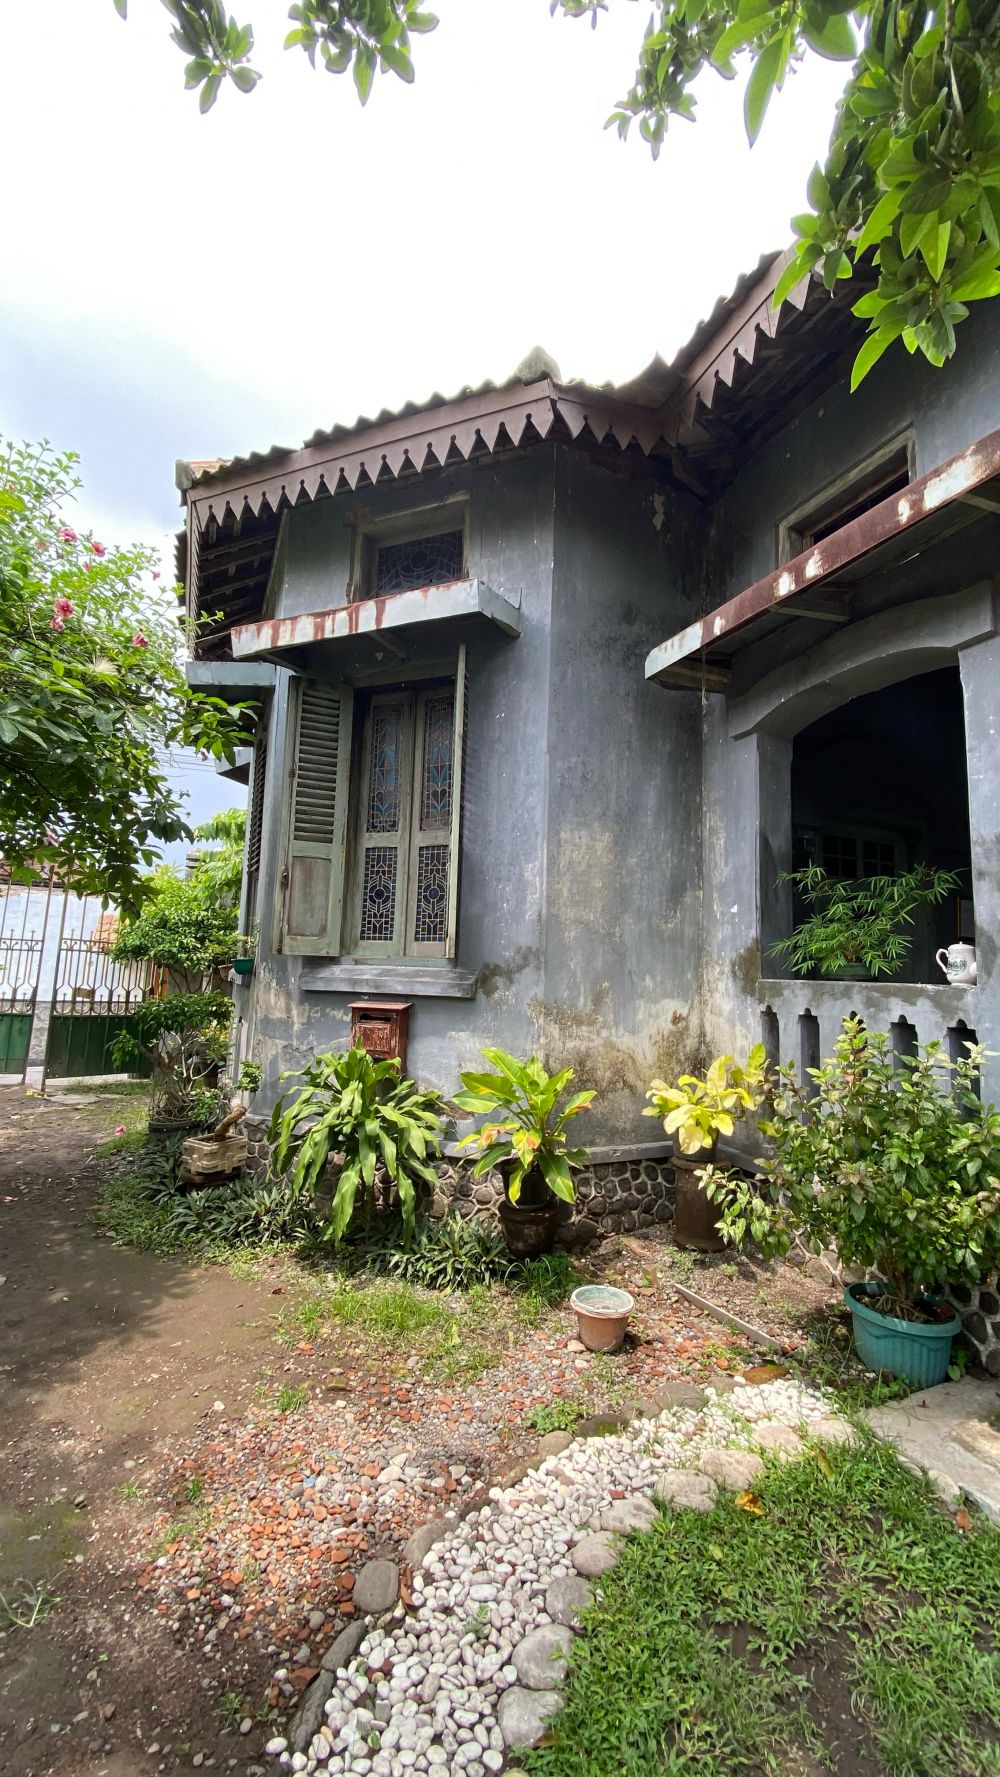 Kisah di balik Rumah Pocong Sumi yang penuh sejarah, ternyata milik menteri agama pertama di Indonesia